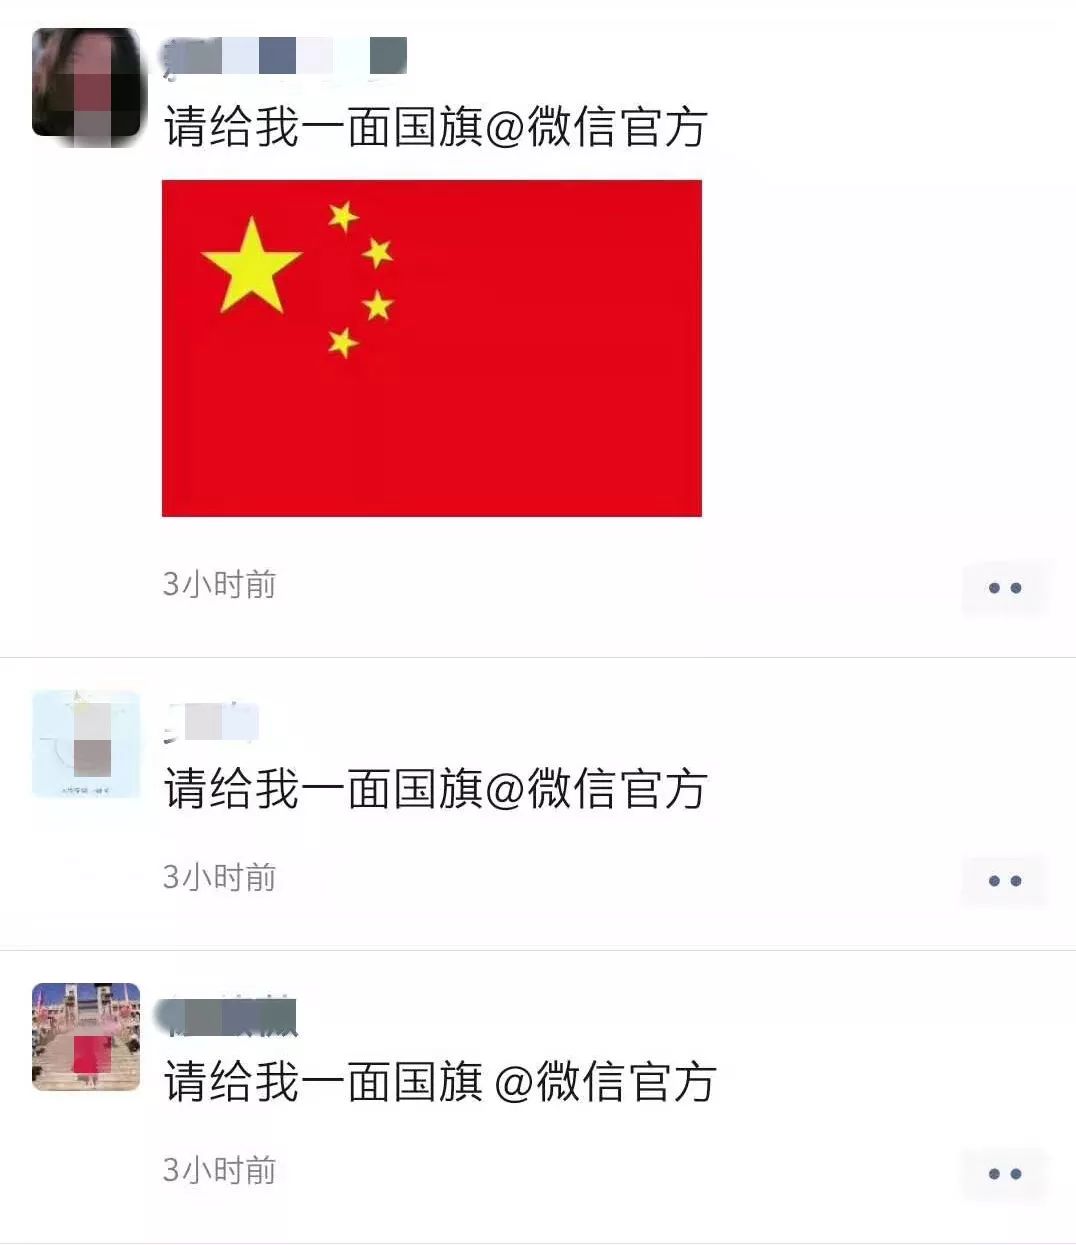 满屏都是中国红我要国旗 @微信官方刷了屏